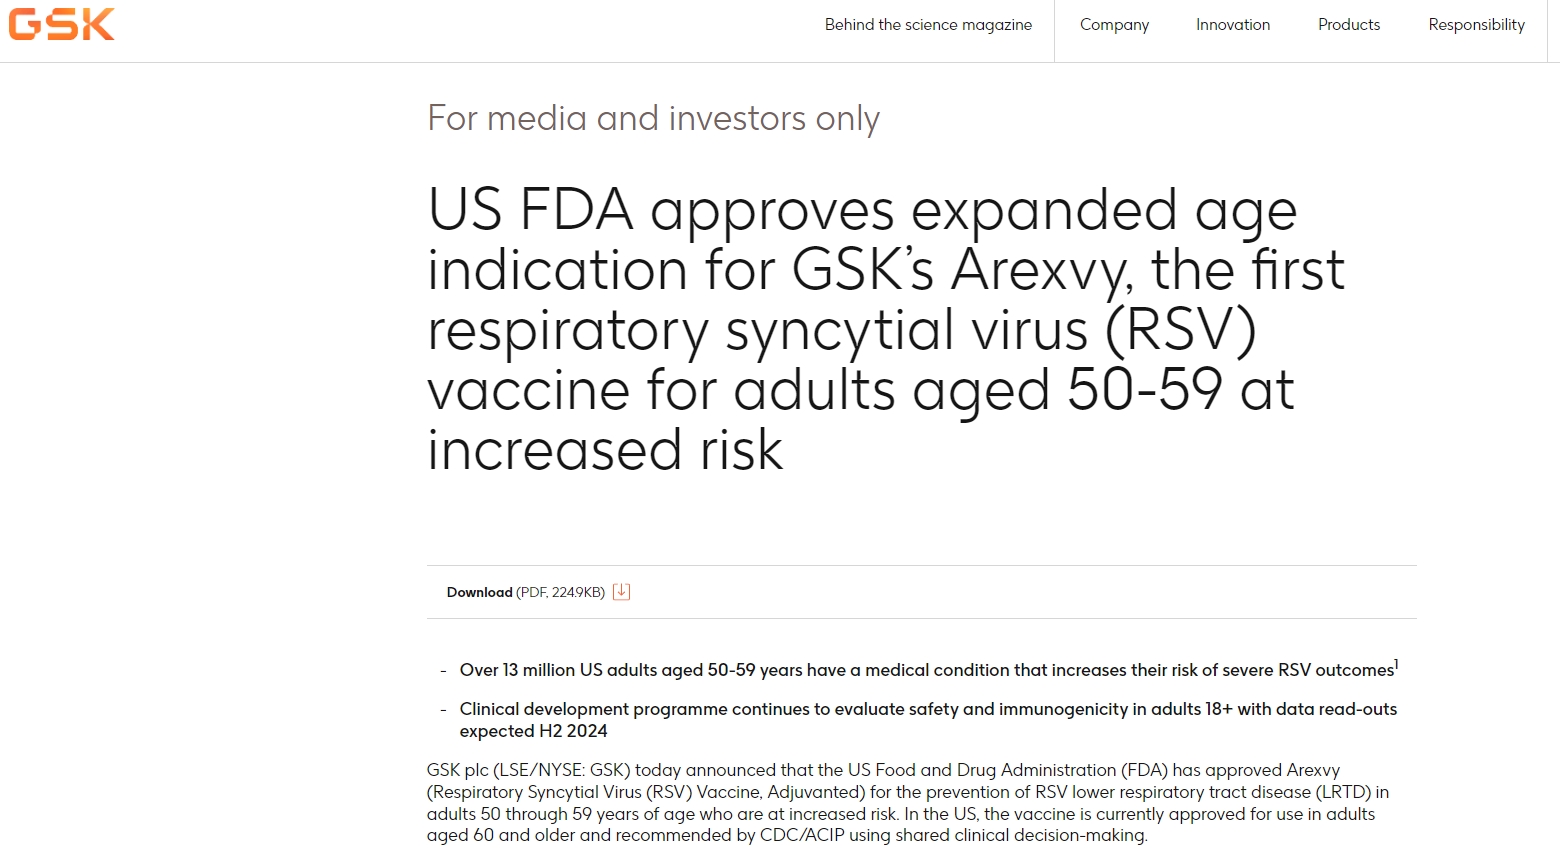 葛兰素史克RSV疫苗获批扩大适用人群至50-59岁